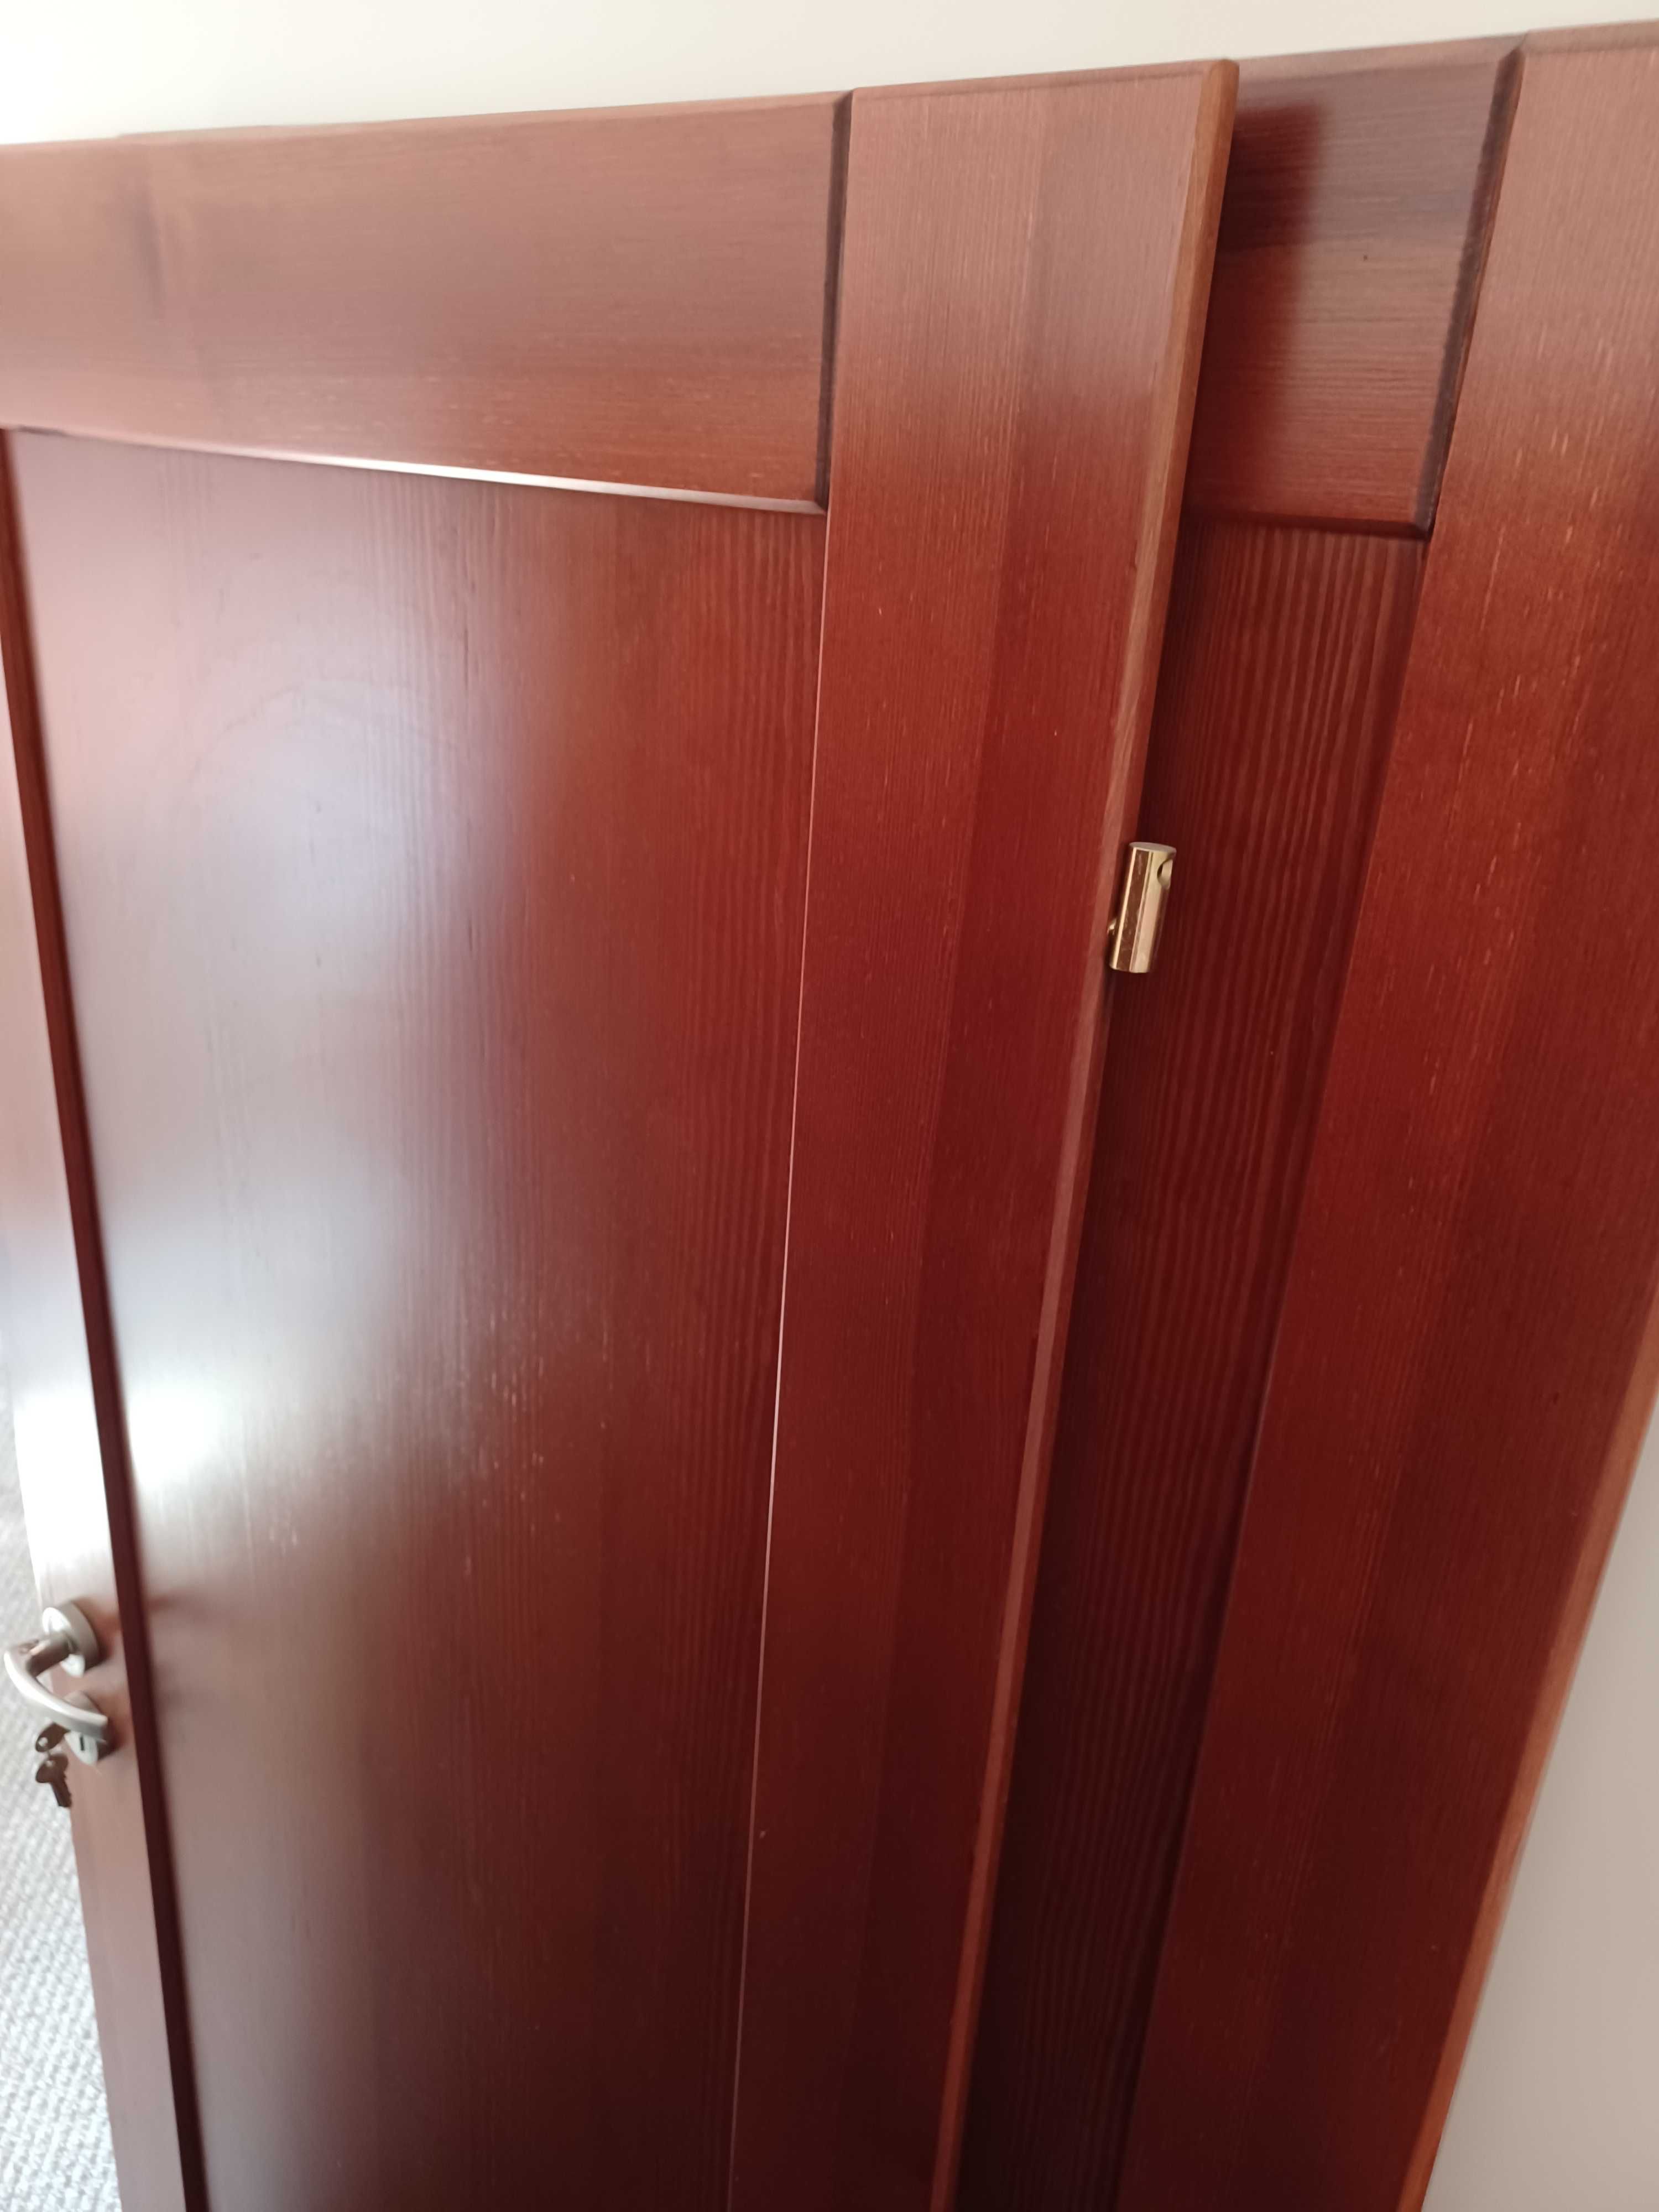 Solidne drzwi drewniane wewnętrzne 4pary, z futryną, pokój, łazienka